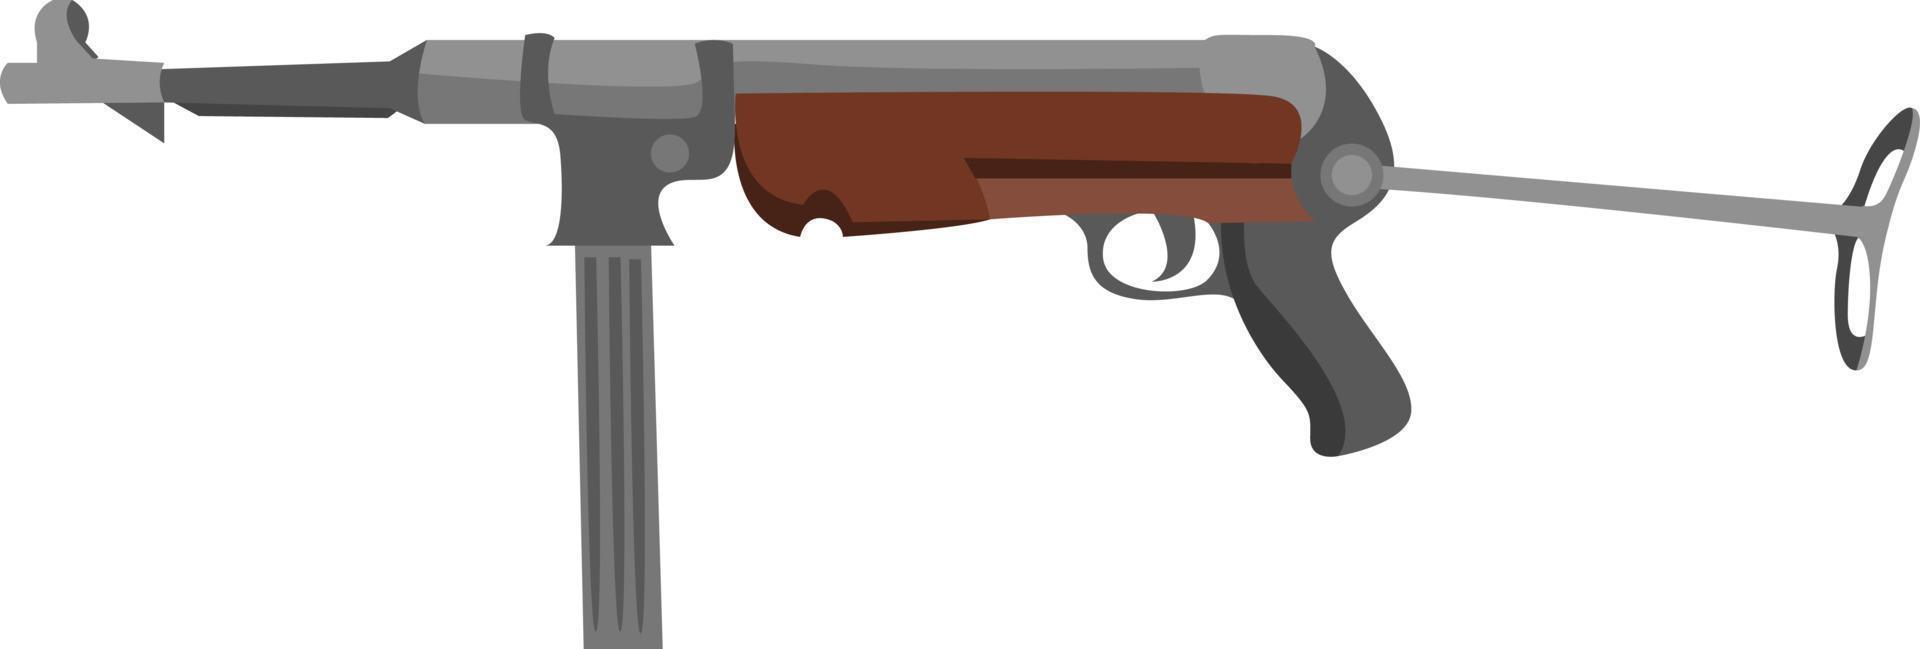 Pistola mp 40, ilustración, vector sobre fondo blanco